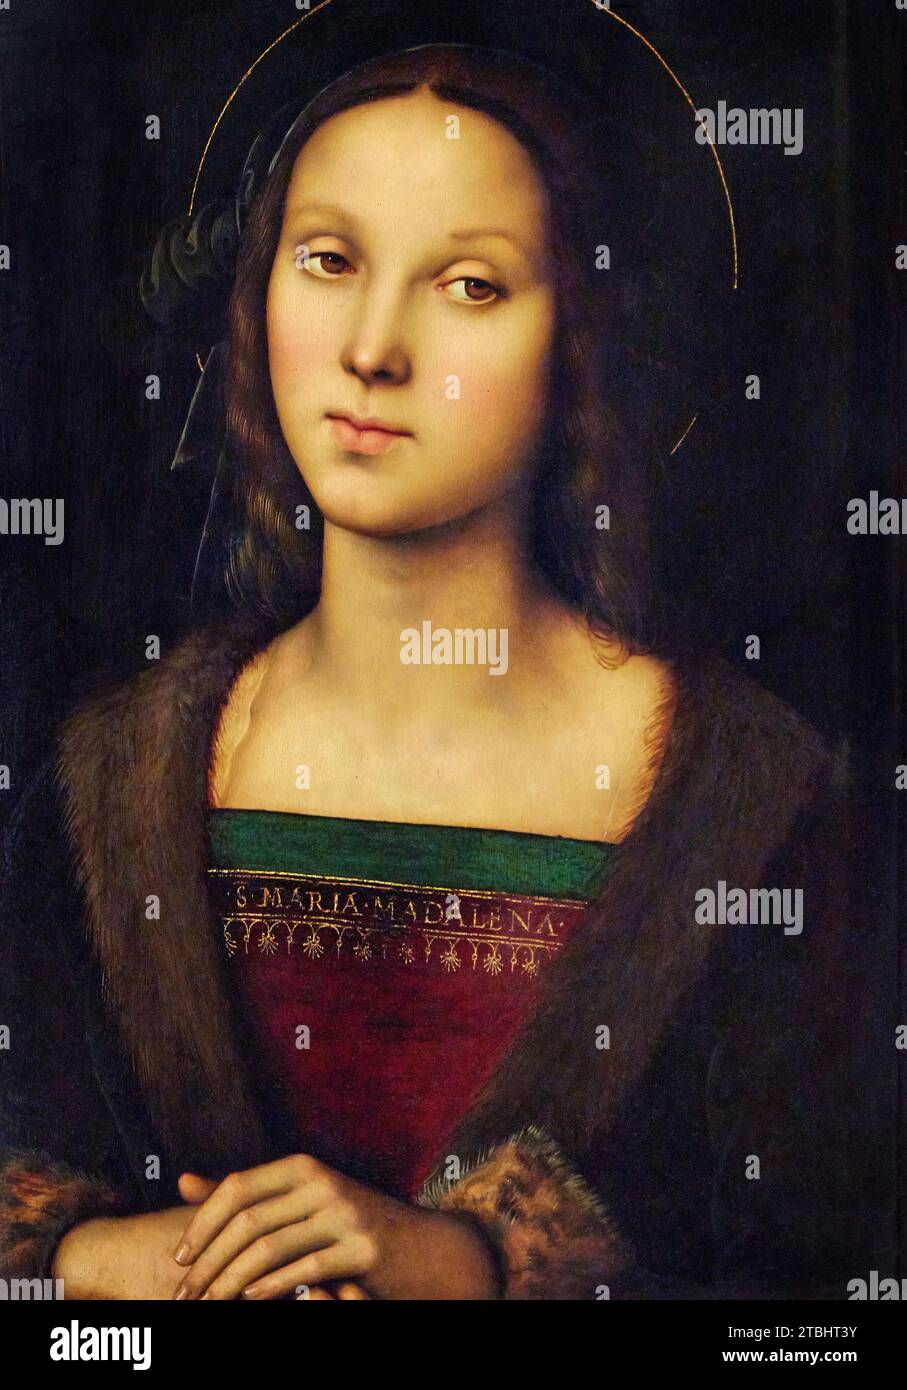 S.Maria Maddalena - olio su tavola - Pietro Vannucci detto il Perugino - 1500 - Firenze,Galleria degli Uffizi,Galleria Palatina Stock Photo